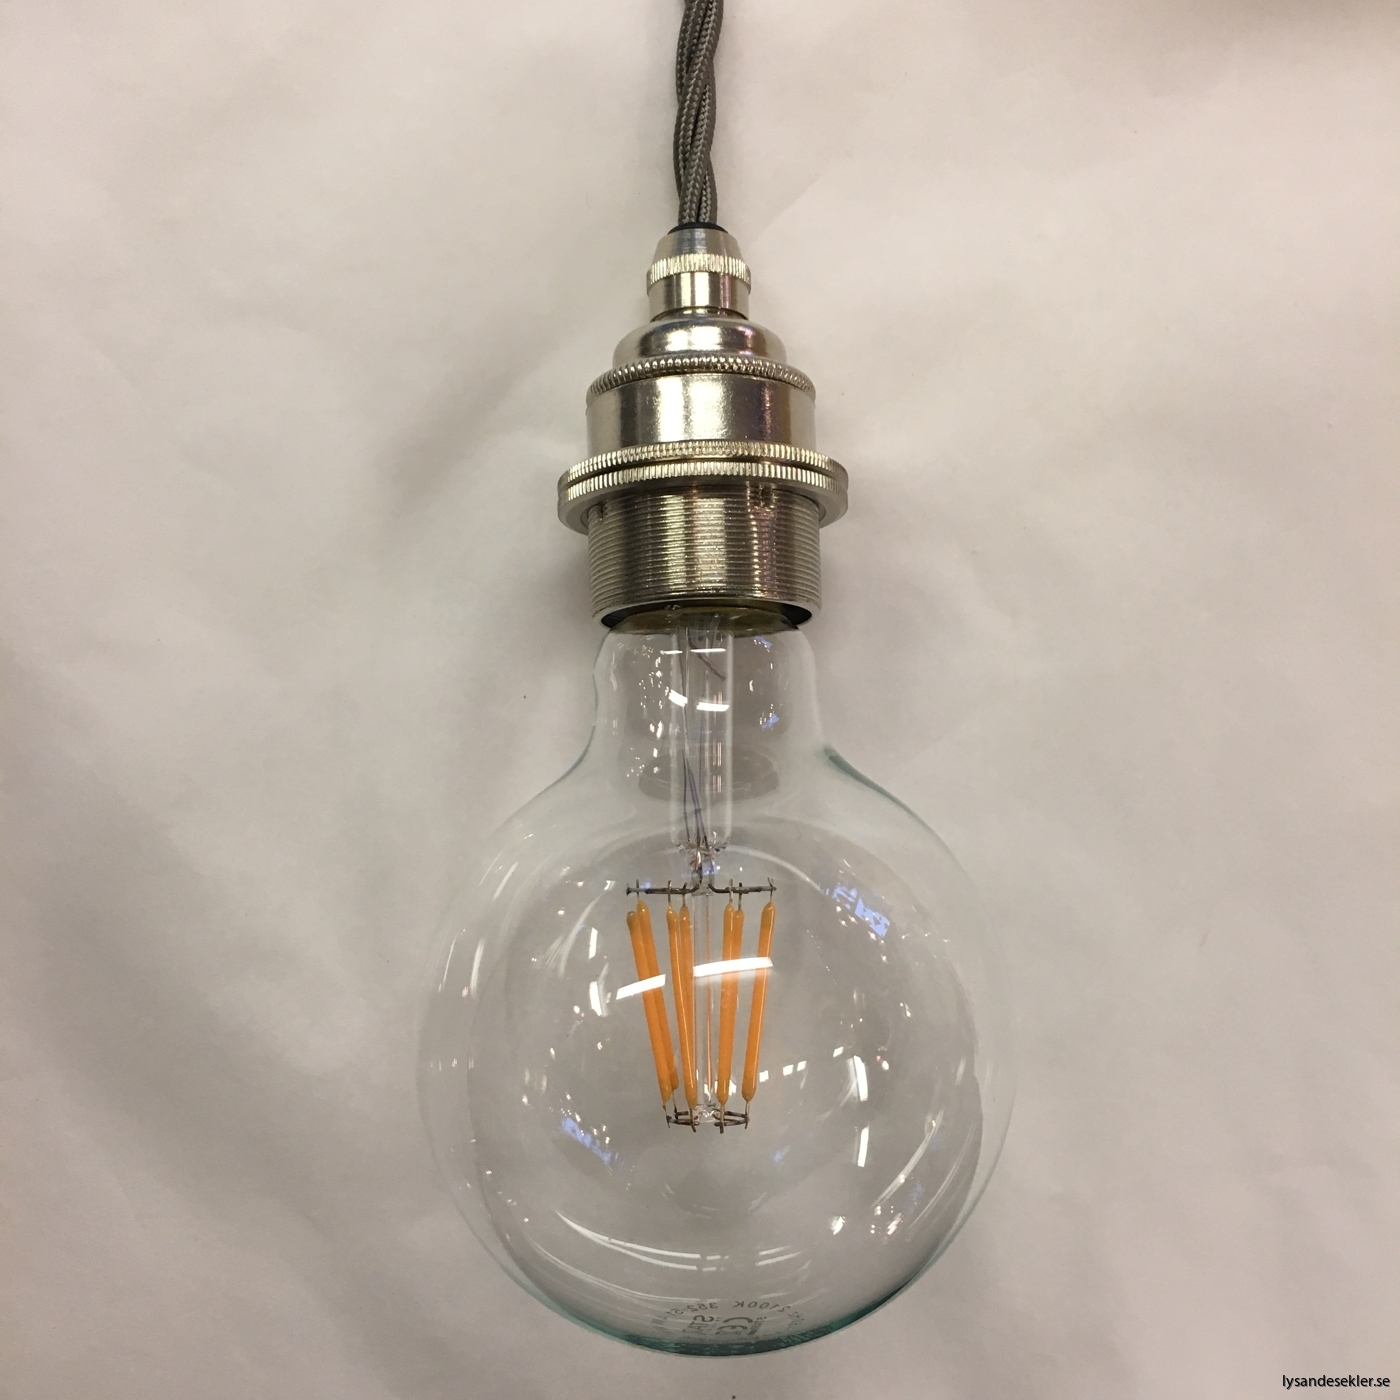 tygsladd textilssladd lampupphäng med 2 ringar utan skruvar för skärm eller glödlampa (26)